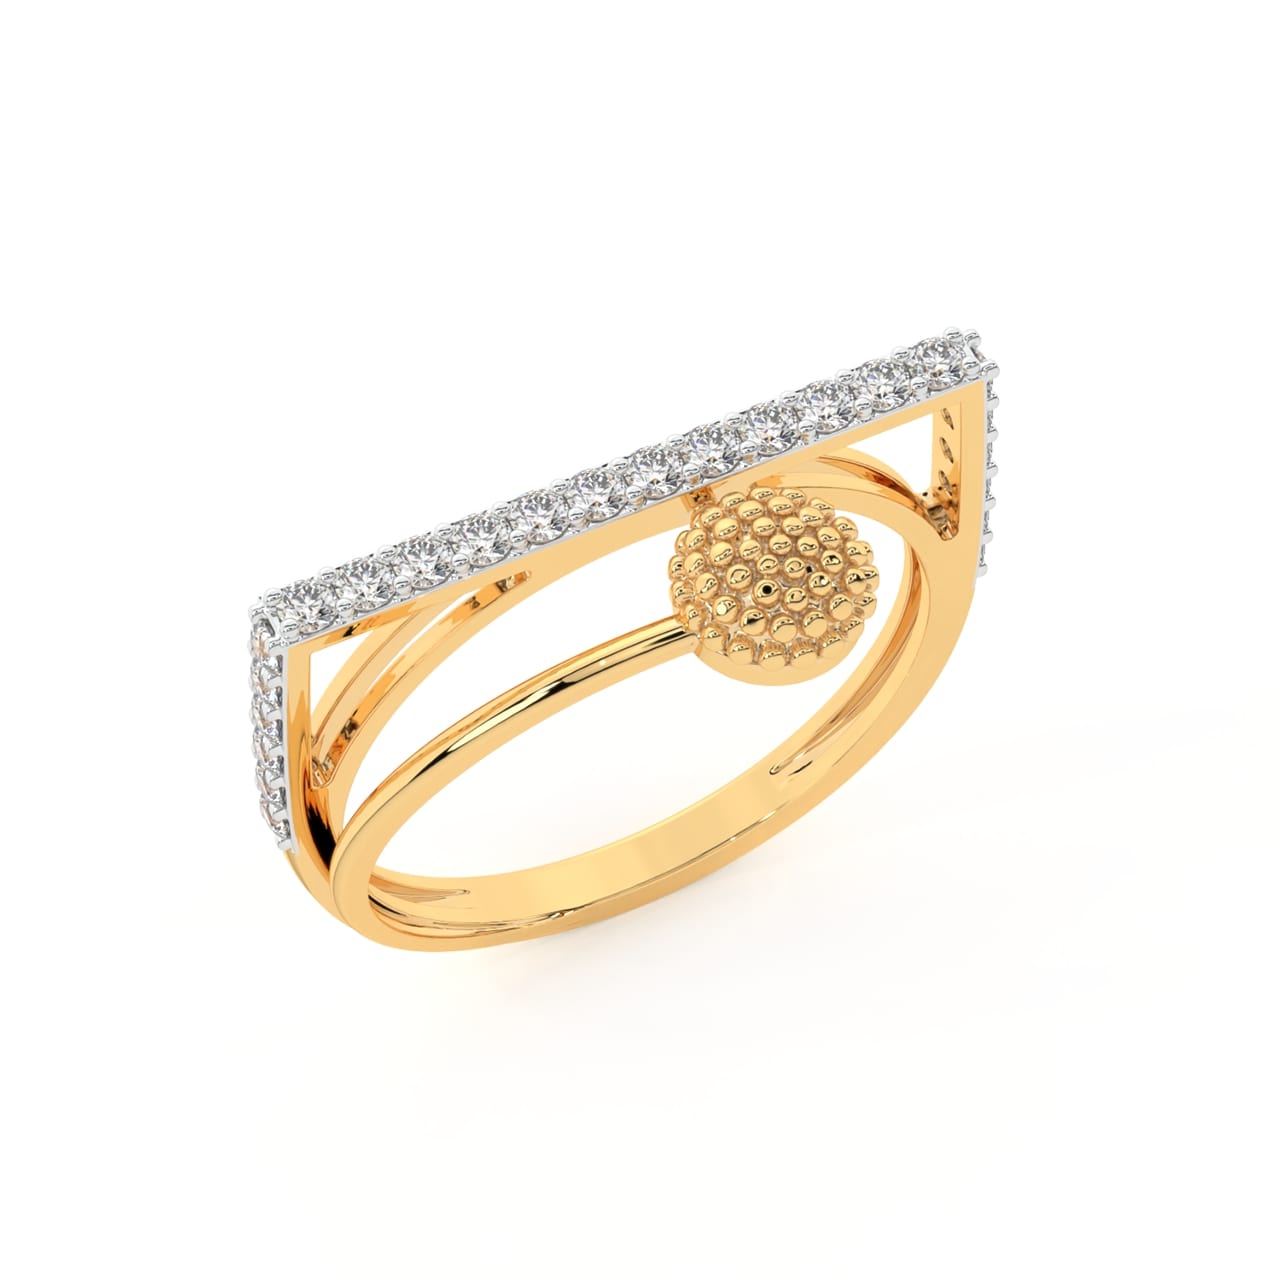 Ranica Round Diamond Engagement Ring